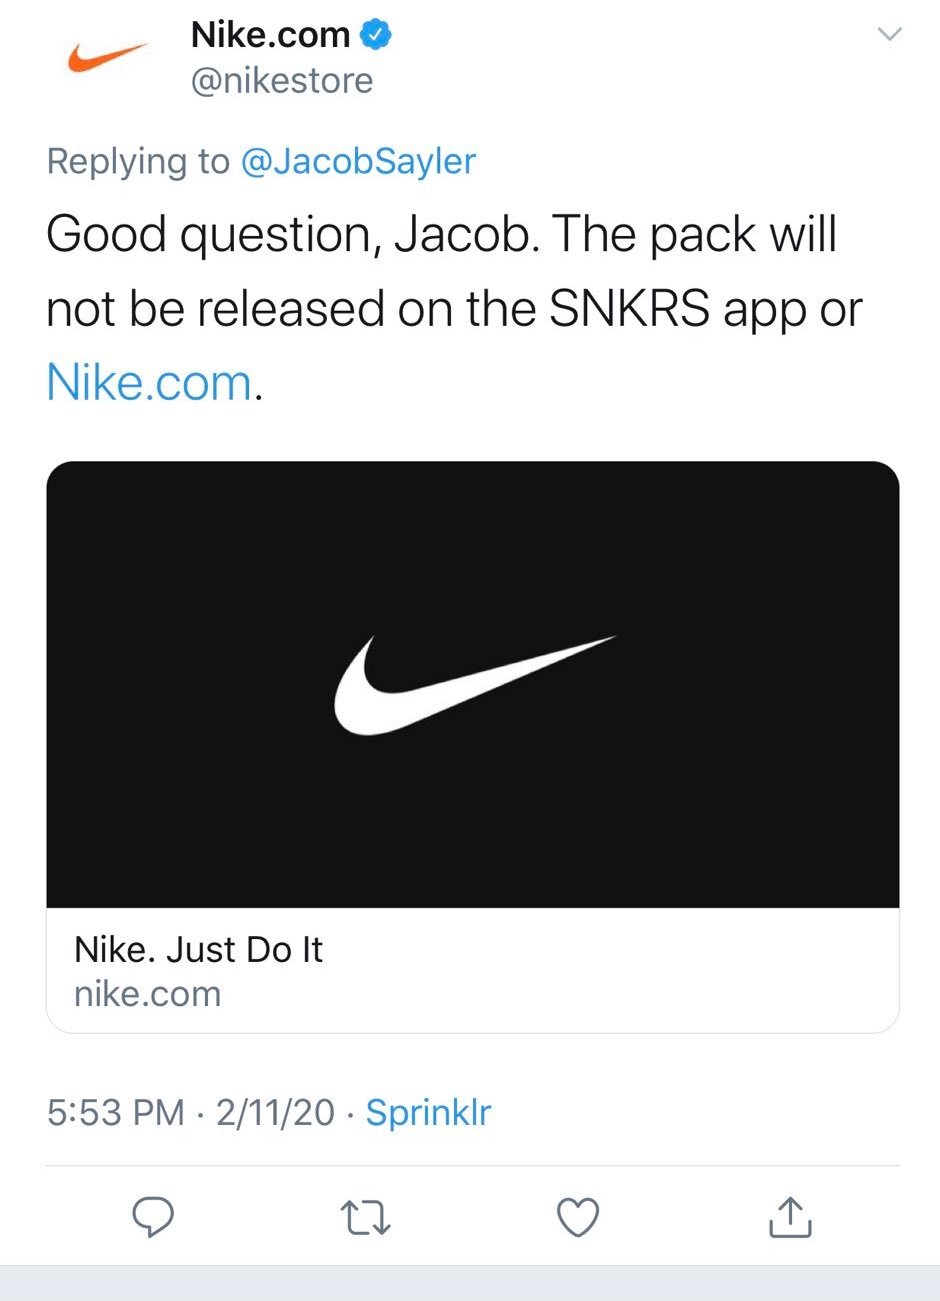 Nike Twitter Account tweet über Release des Air Jordan New Beginnings Pack